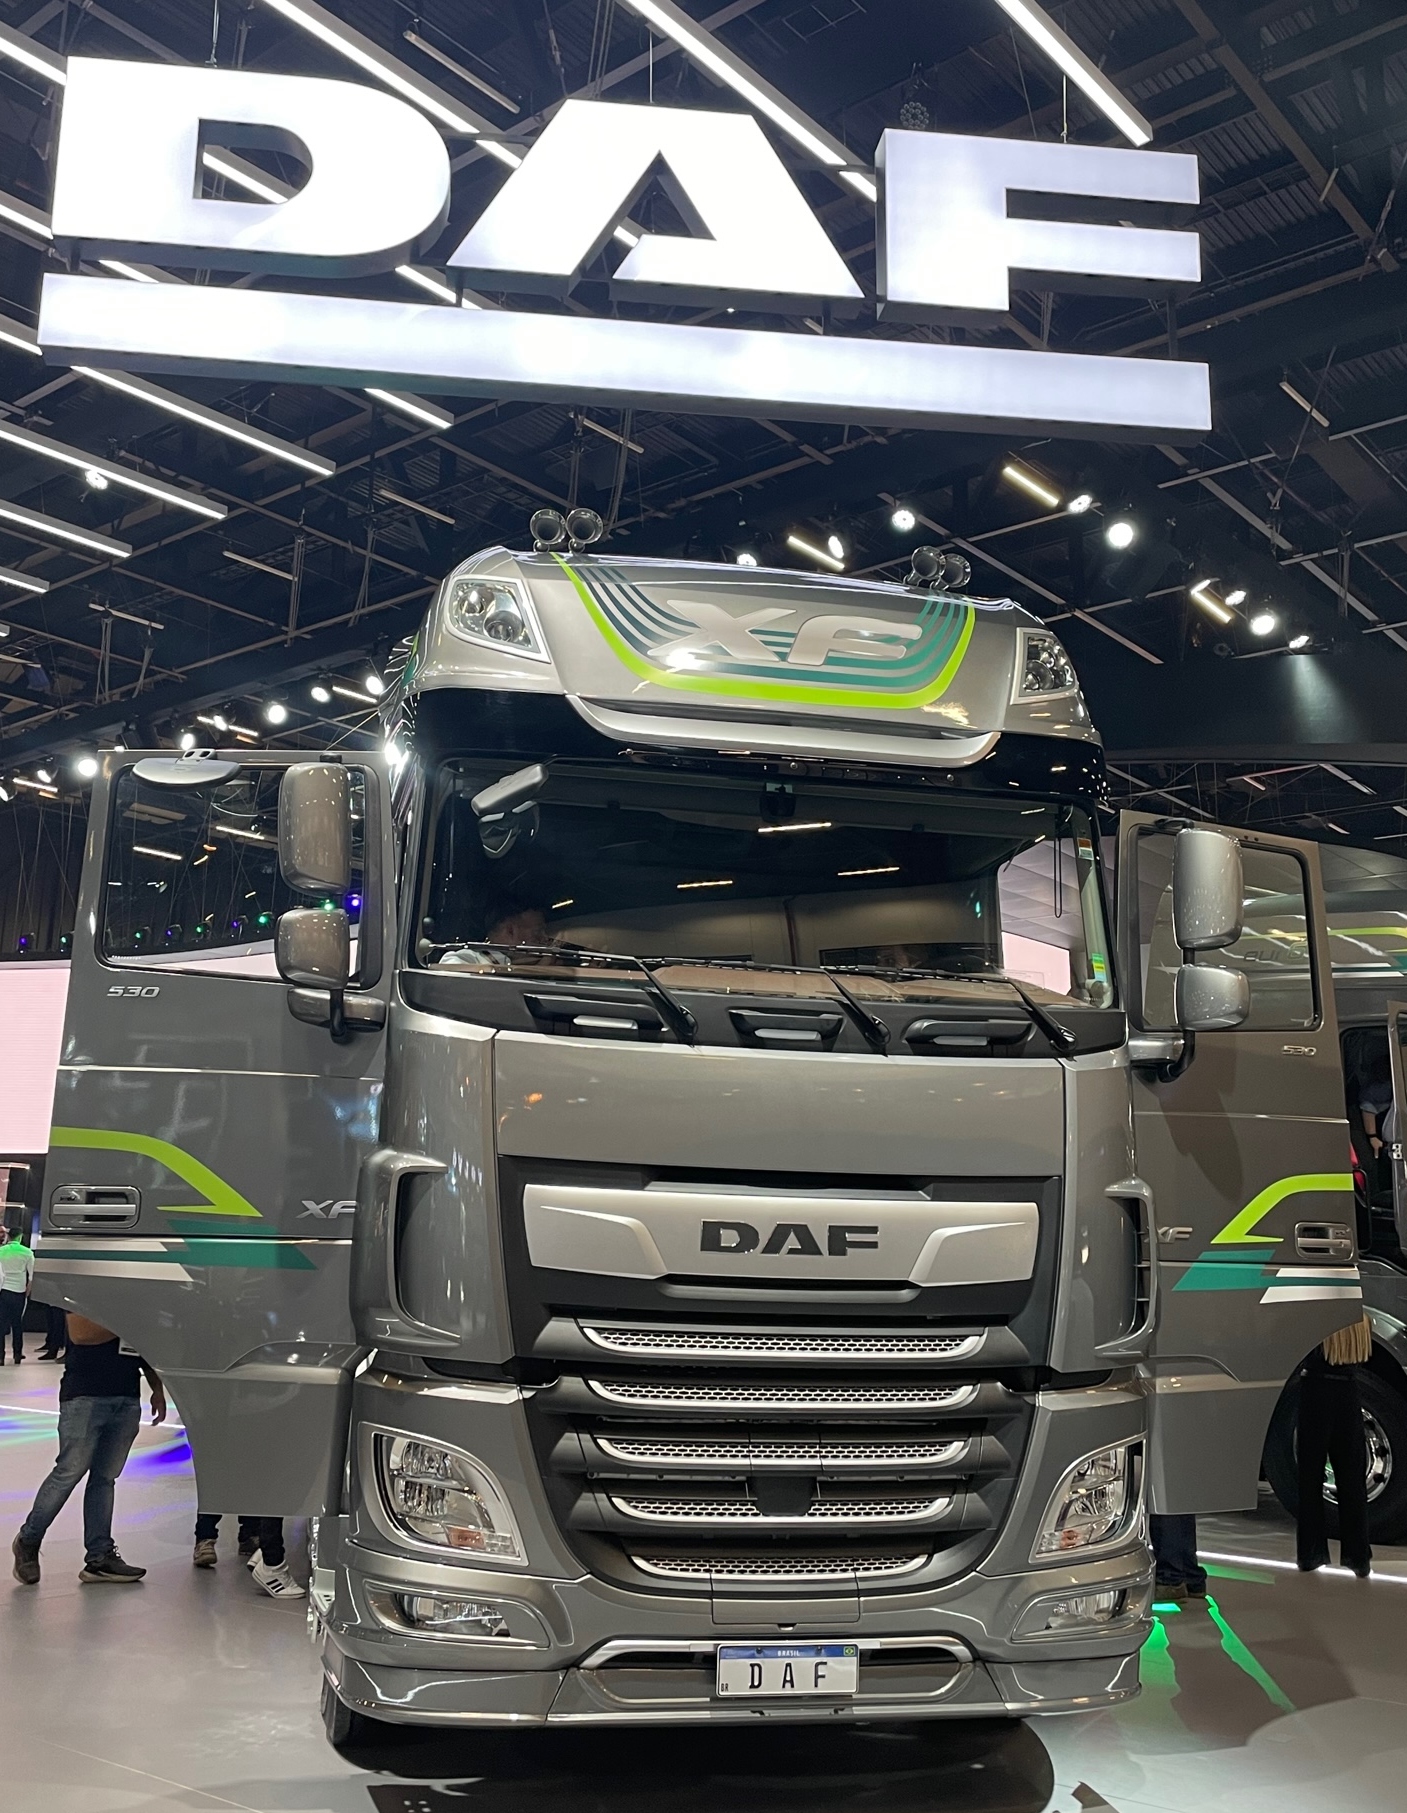 DAF lança os caminhões CF e XF com motores Euro 6 na Fenatran